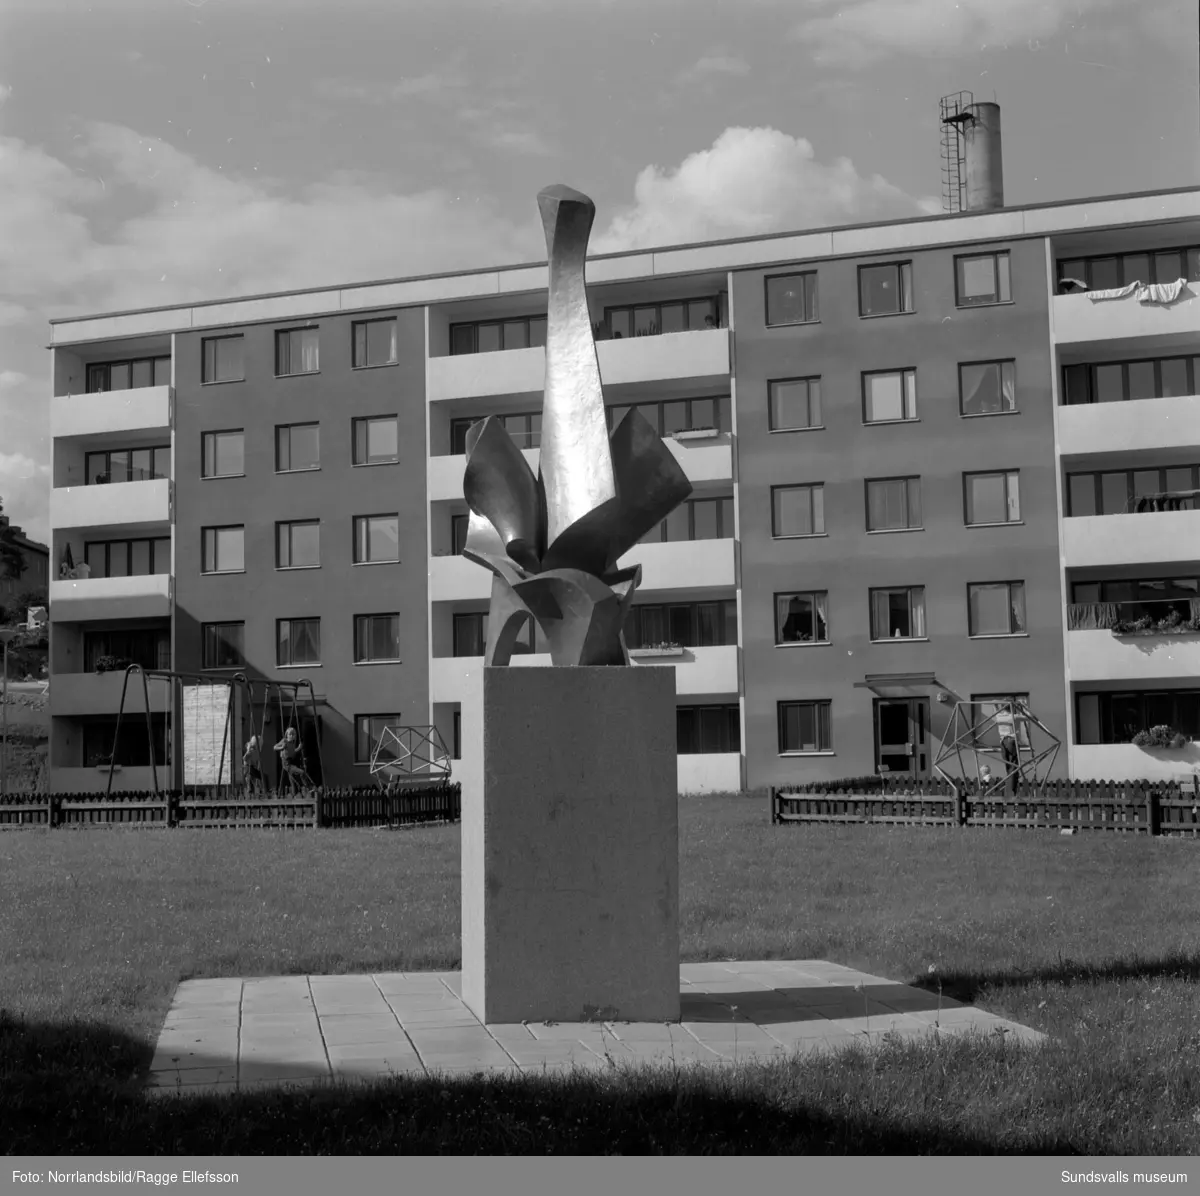 Bronsskulptur av Erik Grate, "Snäckfågel", i bostadsområdet vid Basgränd, Trafikgatan.